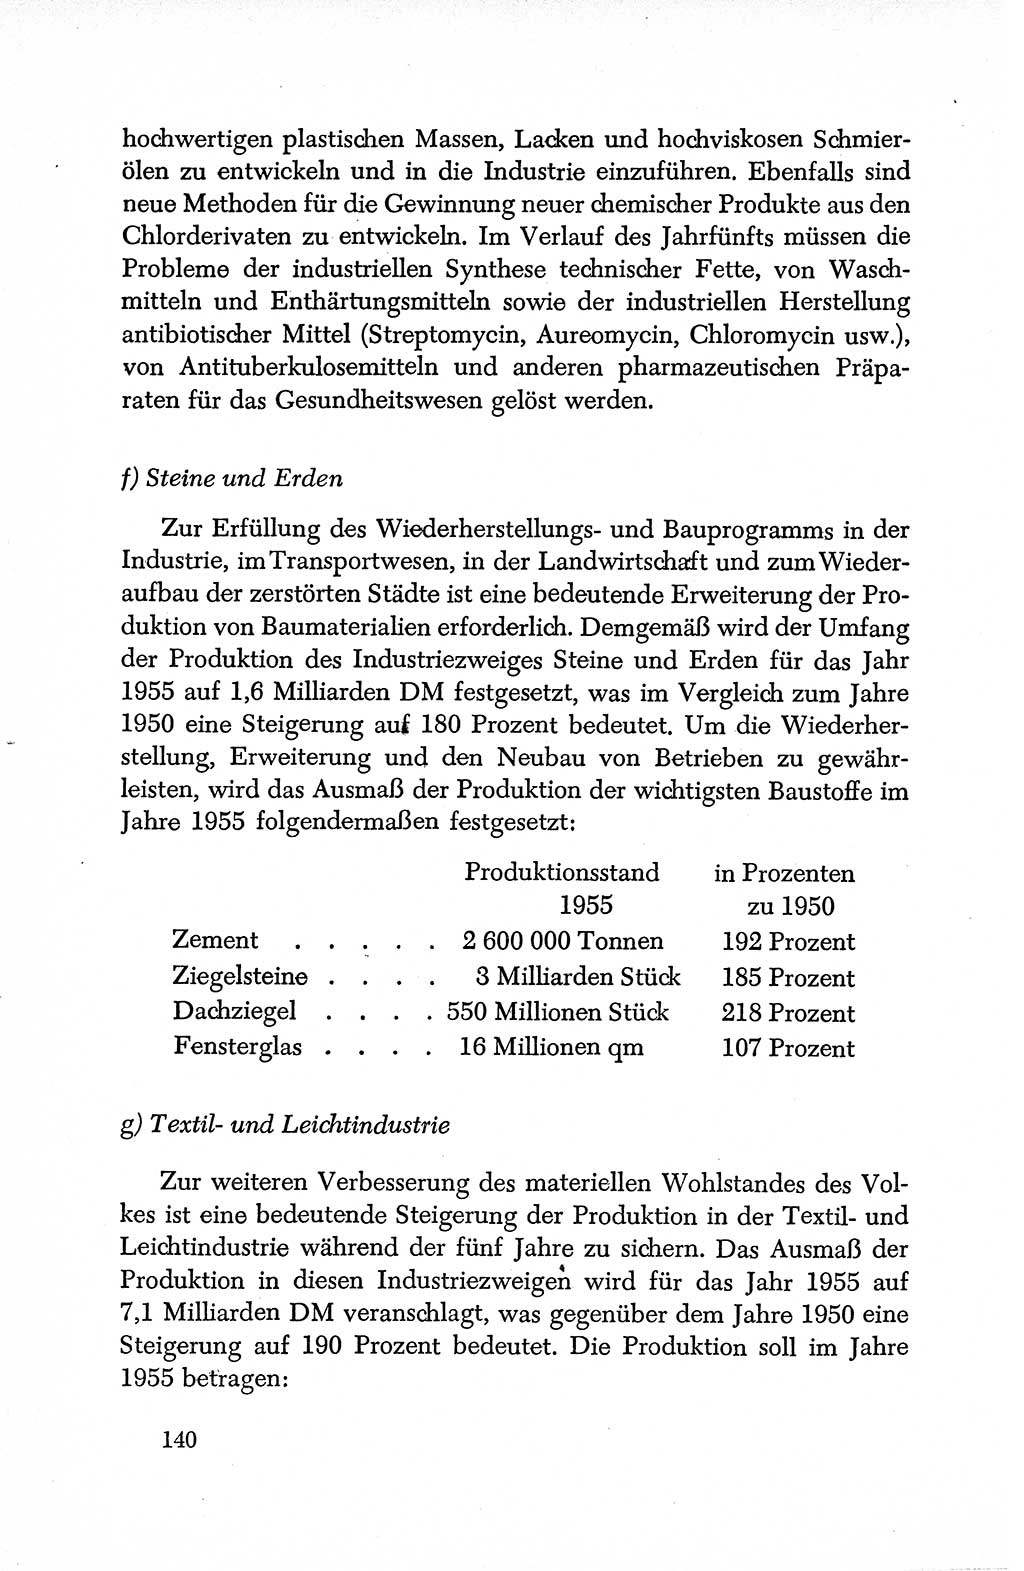 Dokumente der Sozialistischen Einheitspartei Deutschlands (SED) [Deutsche Demokratische Republik (DDR)] 1950-1952, Seite 140 (Dok. SED DDR 1950-1952, S. 140)